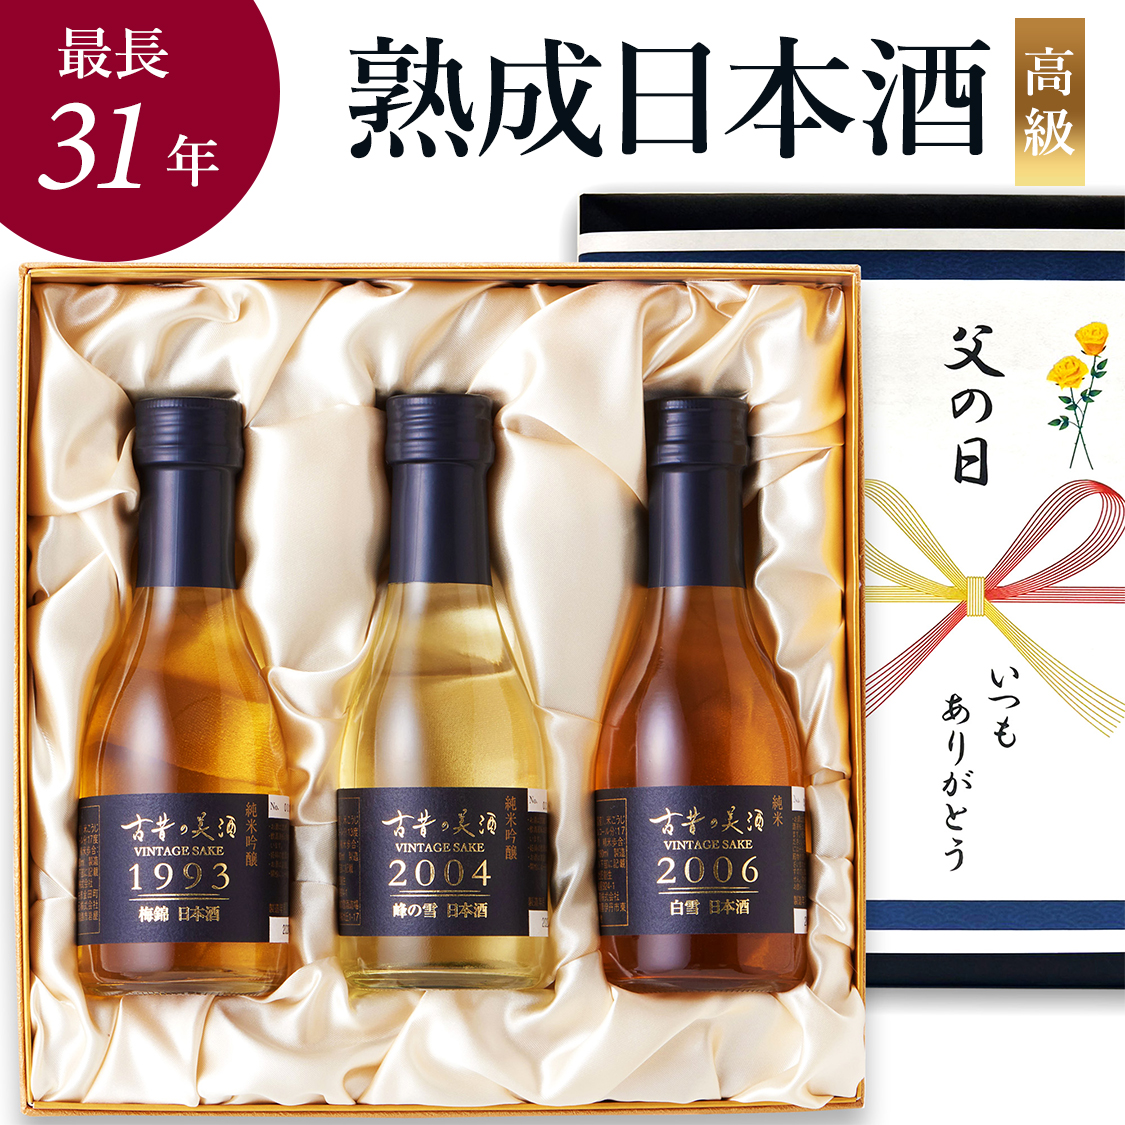 高級 日本酒 ギフト 最長31年 長期熟成 ヴィンテージ 希少古酒 3銘柄飲み比べセット 祝シリーズ『古昔の美酒 祝』 誕生日 プレゼント 退職祝い